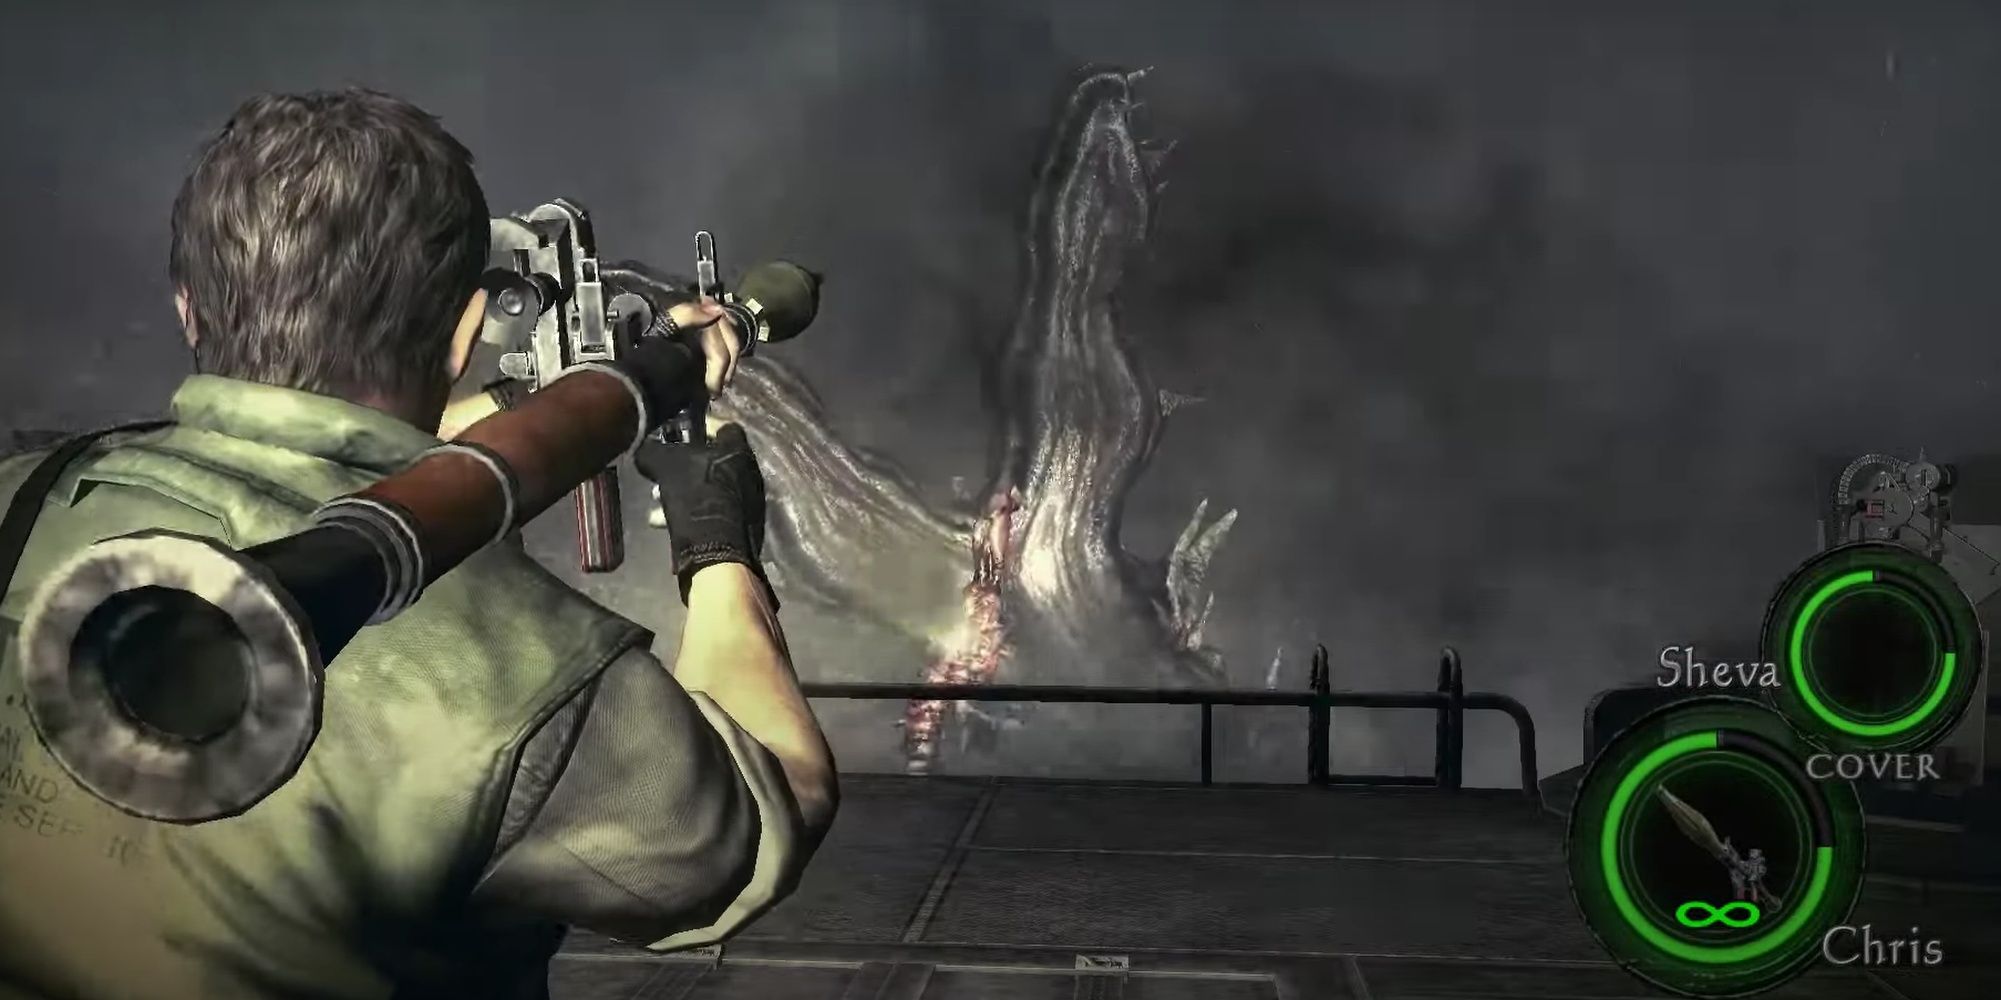 Resident Evil 5: Chris Firing Infinite Ammo RPG At Boss